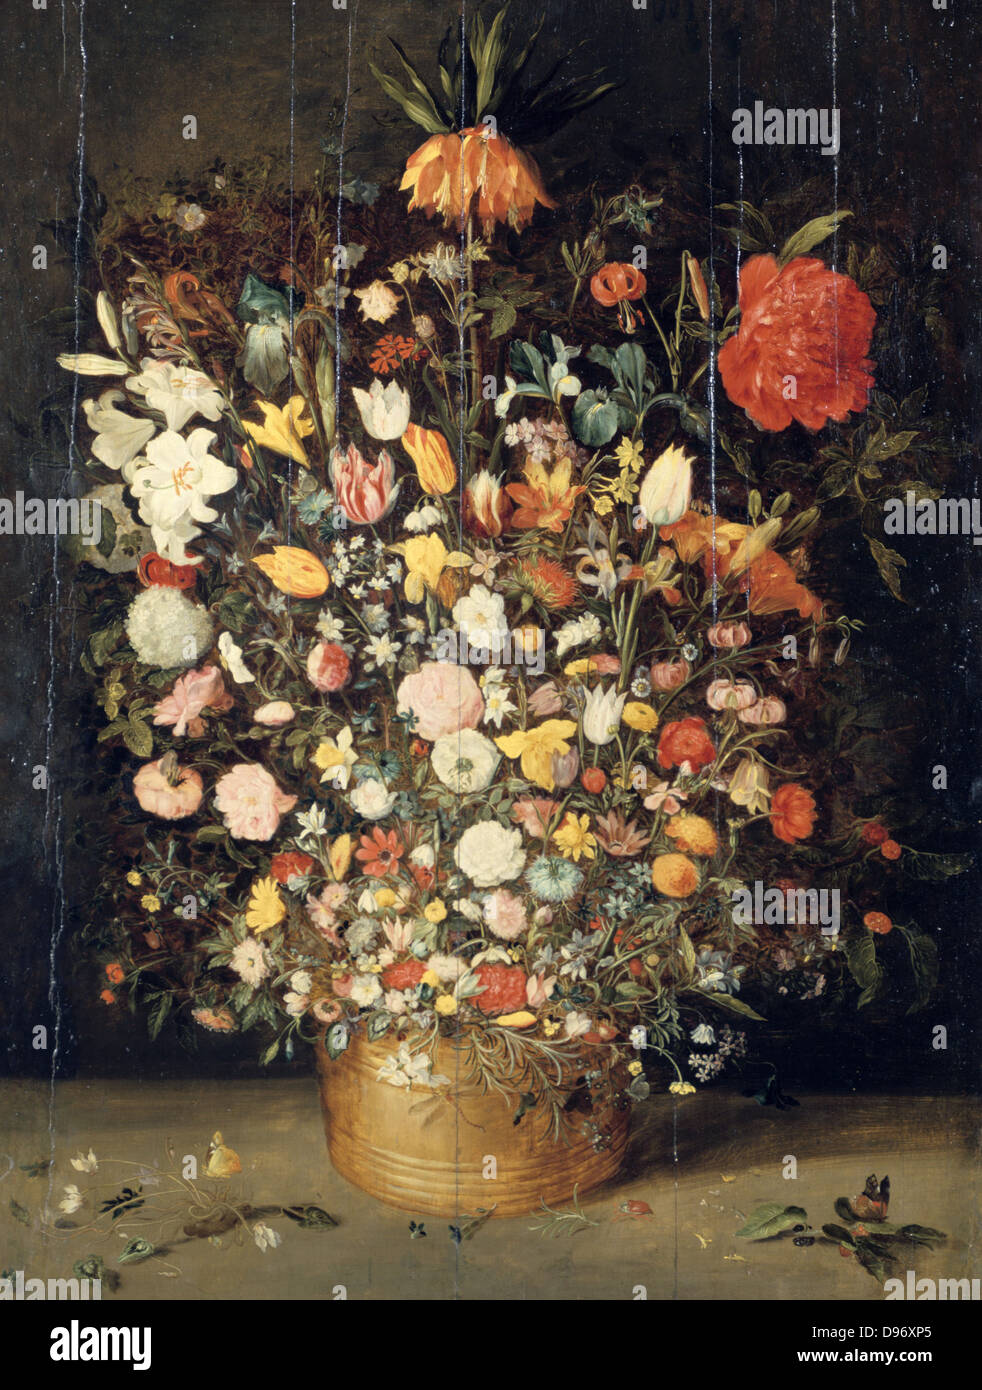 Bouquet de fleurs dans un vase en bois" est toujours la vie. Jan Breughel le jeune (1601-1678) artiste flamand. Huile sur panneau. Banque D'Images